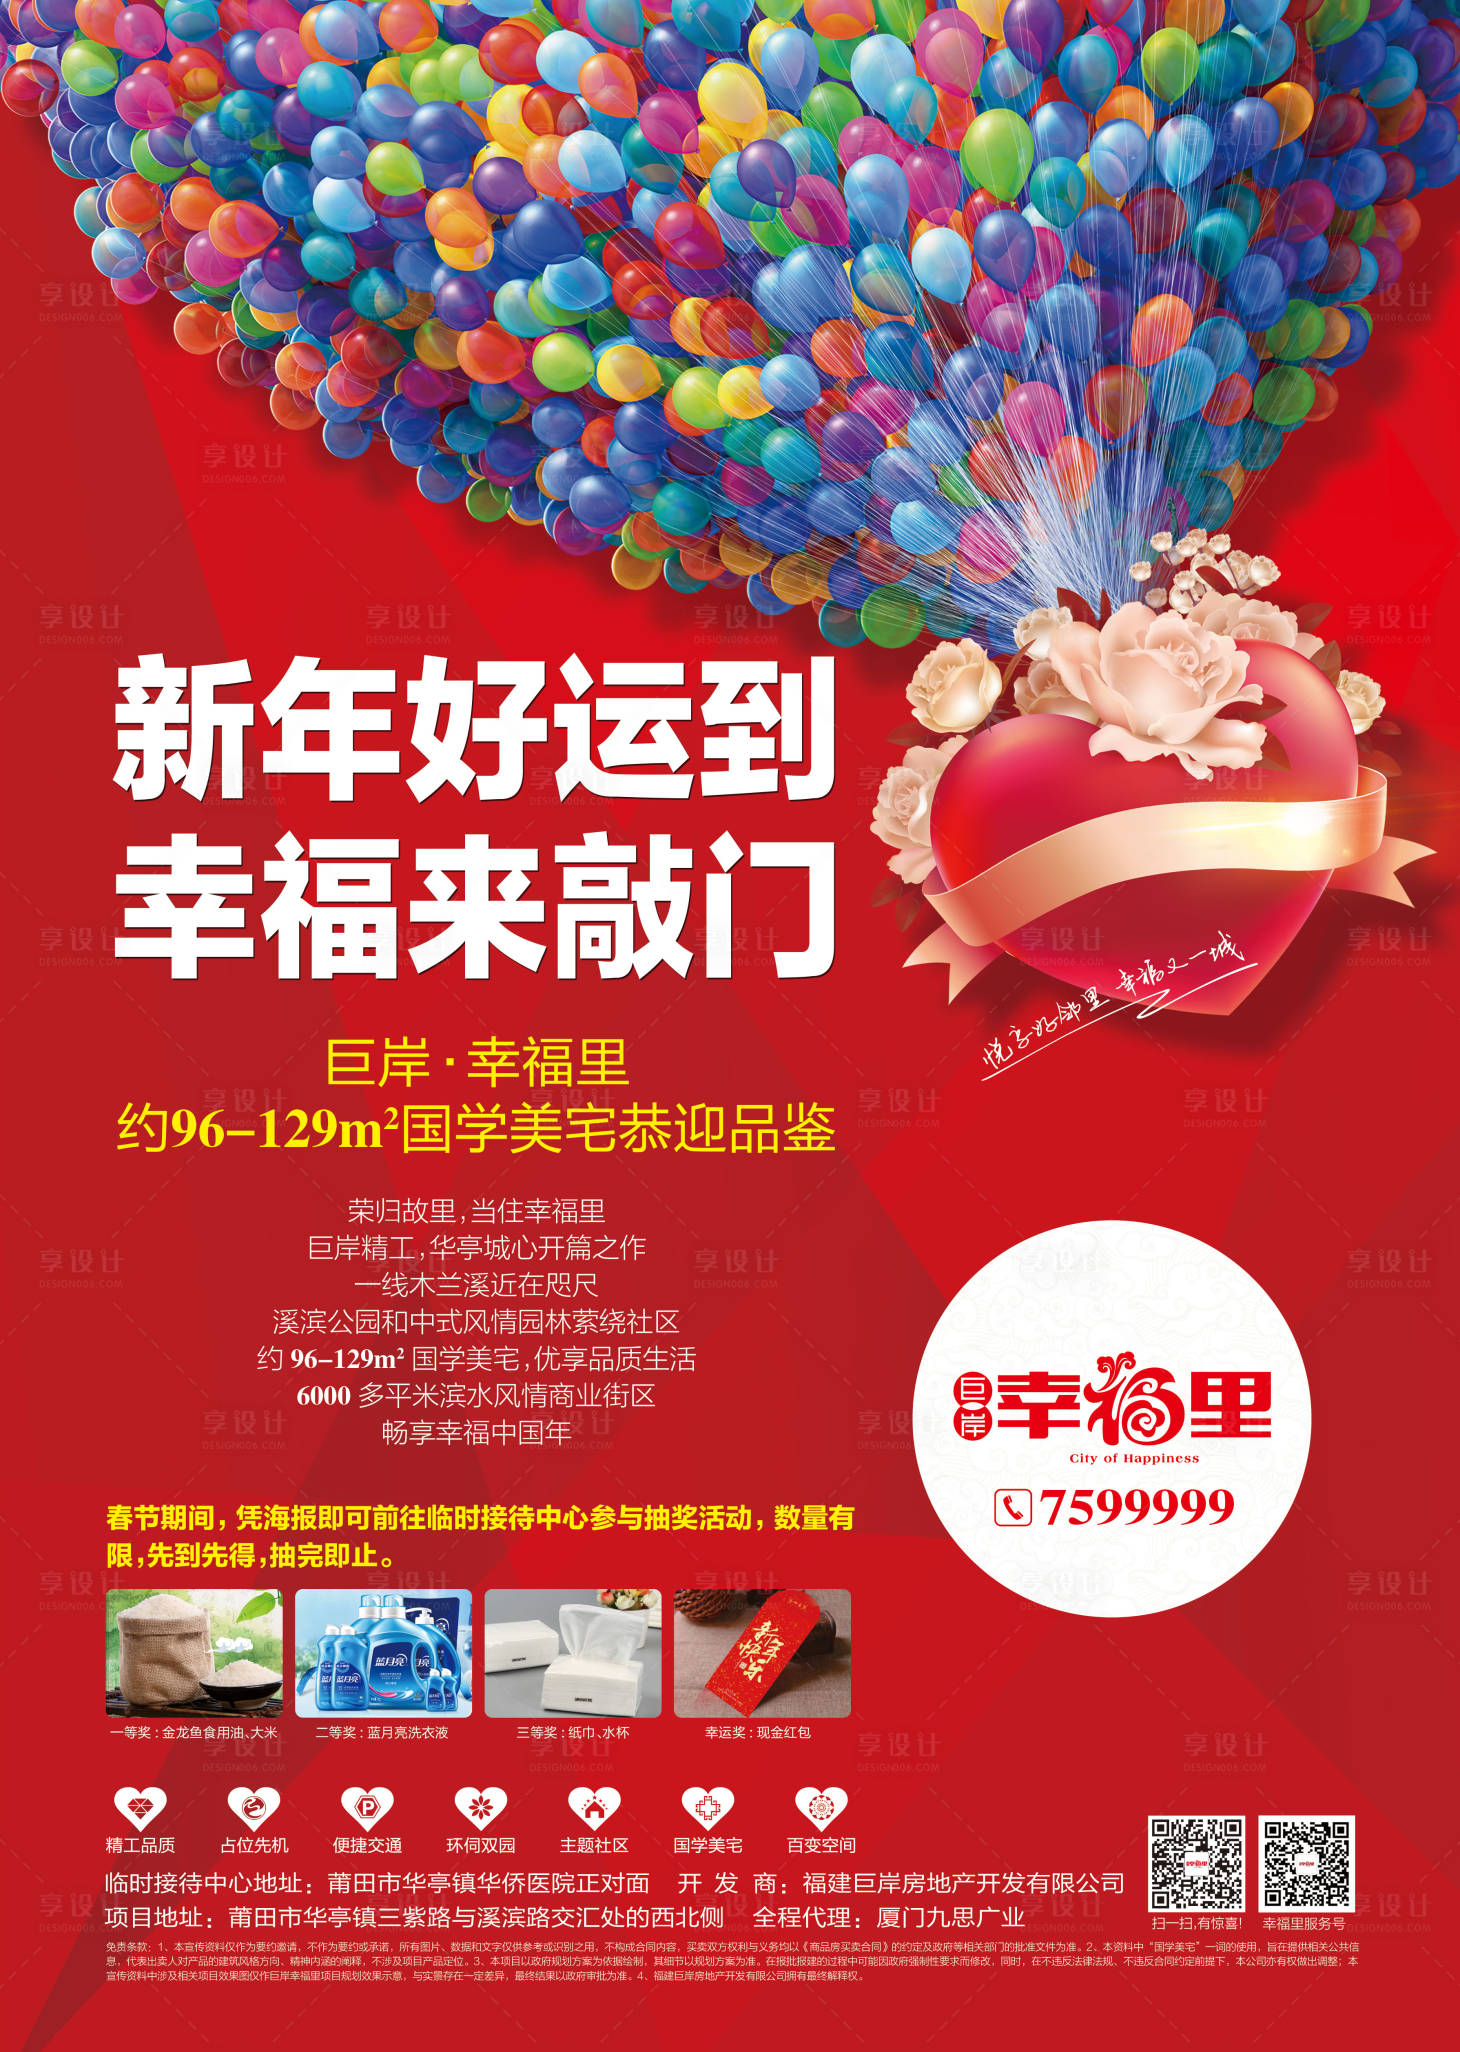 地产新年抽奖活动海报红色psd广告设计作品素材免费